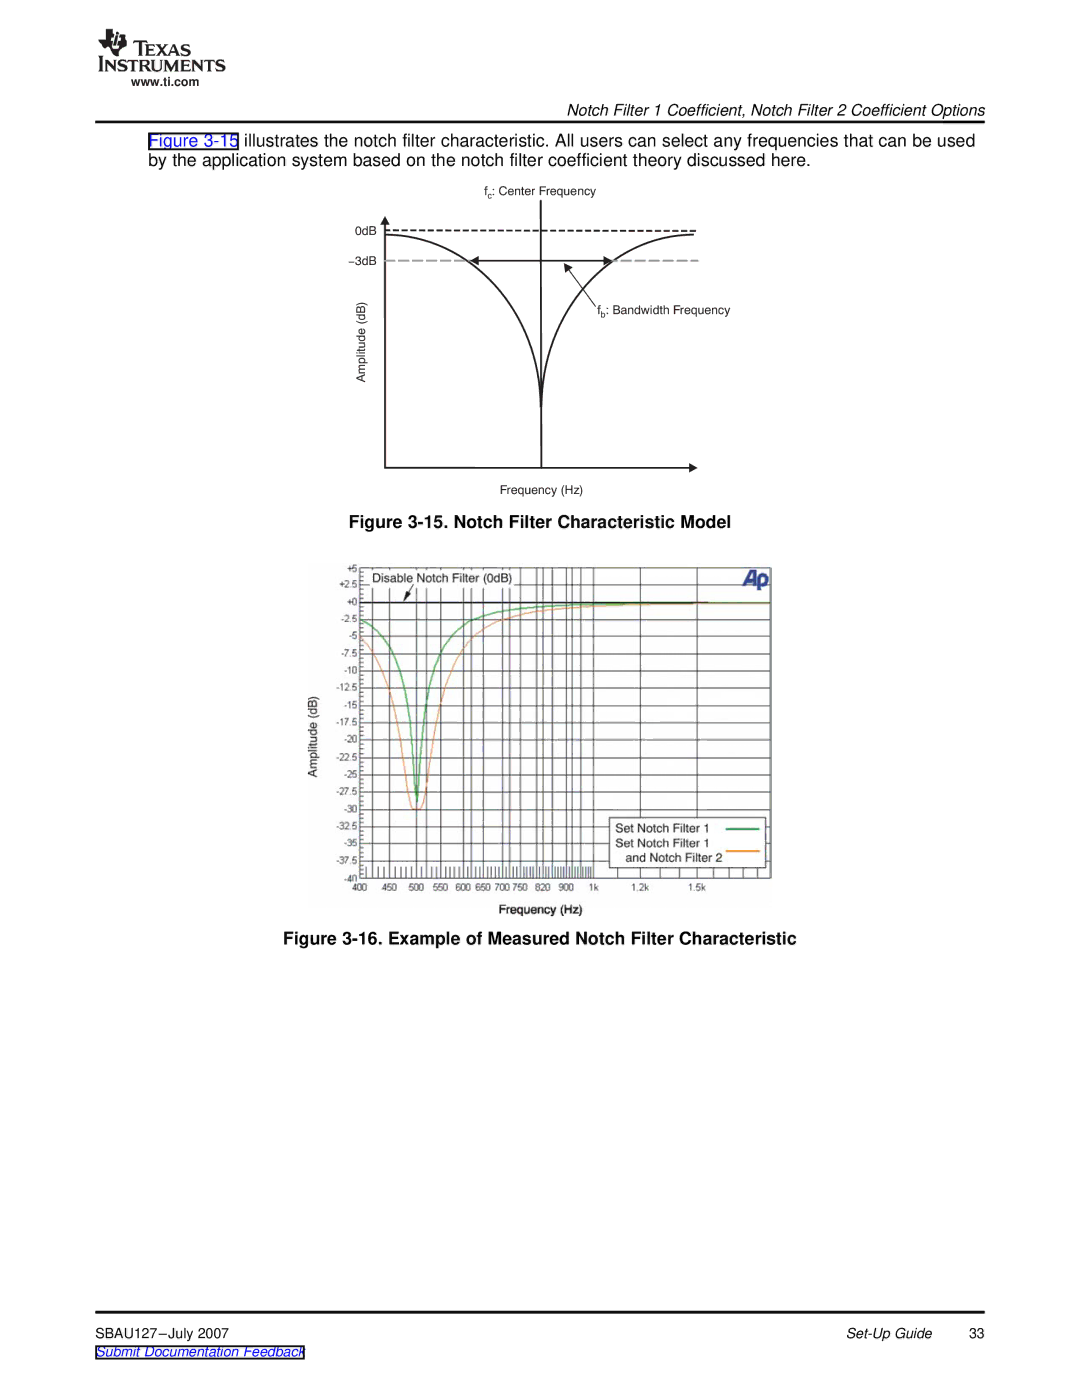 Texas Instruments DEM-DAI3793A manual Notch Filter Characteristic Model 